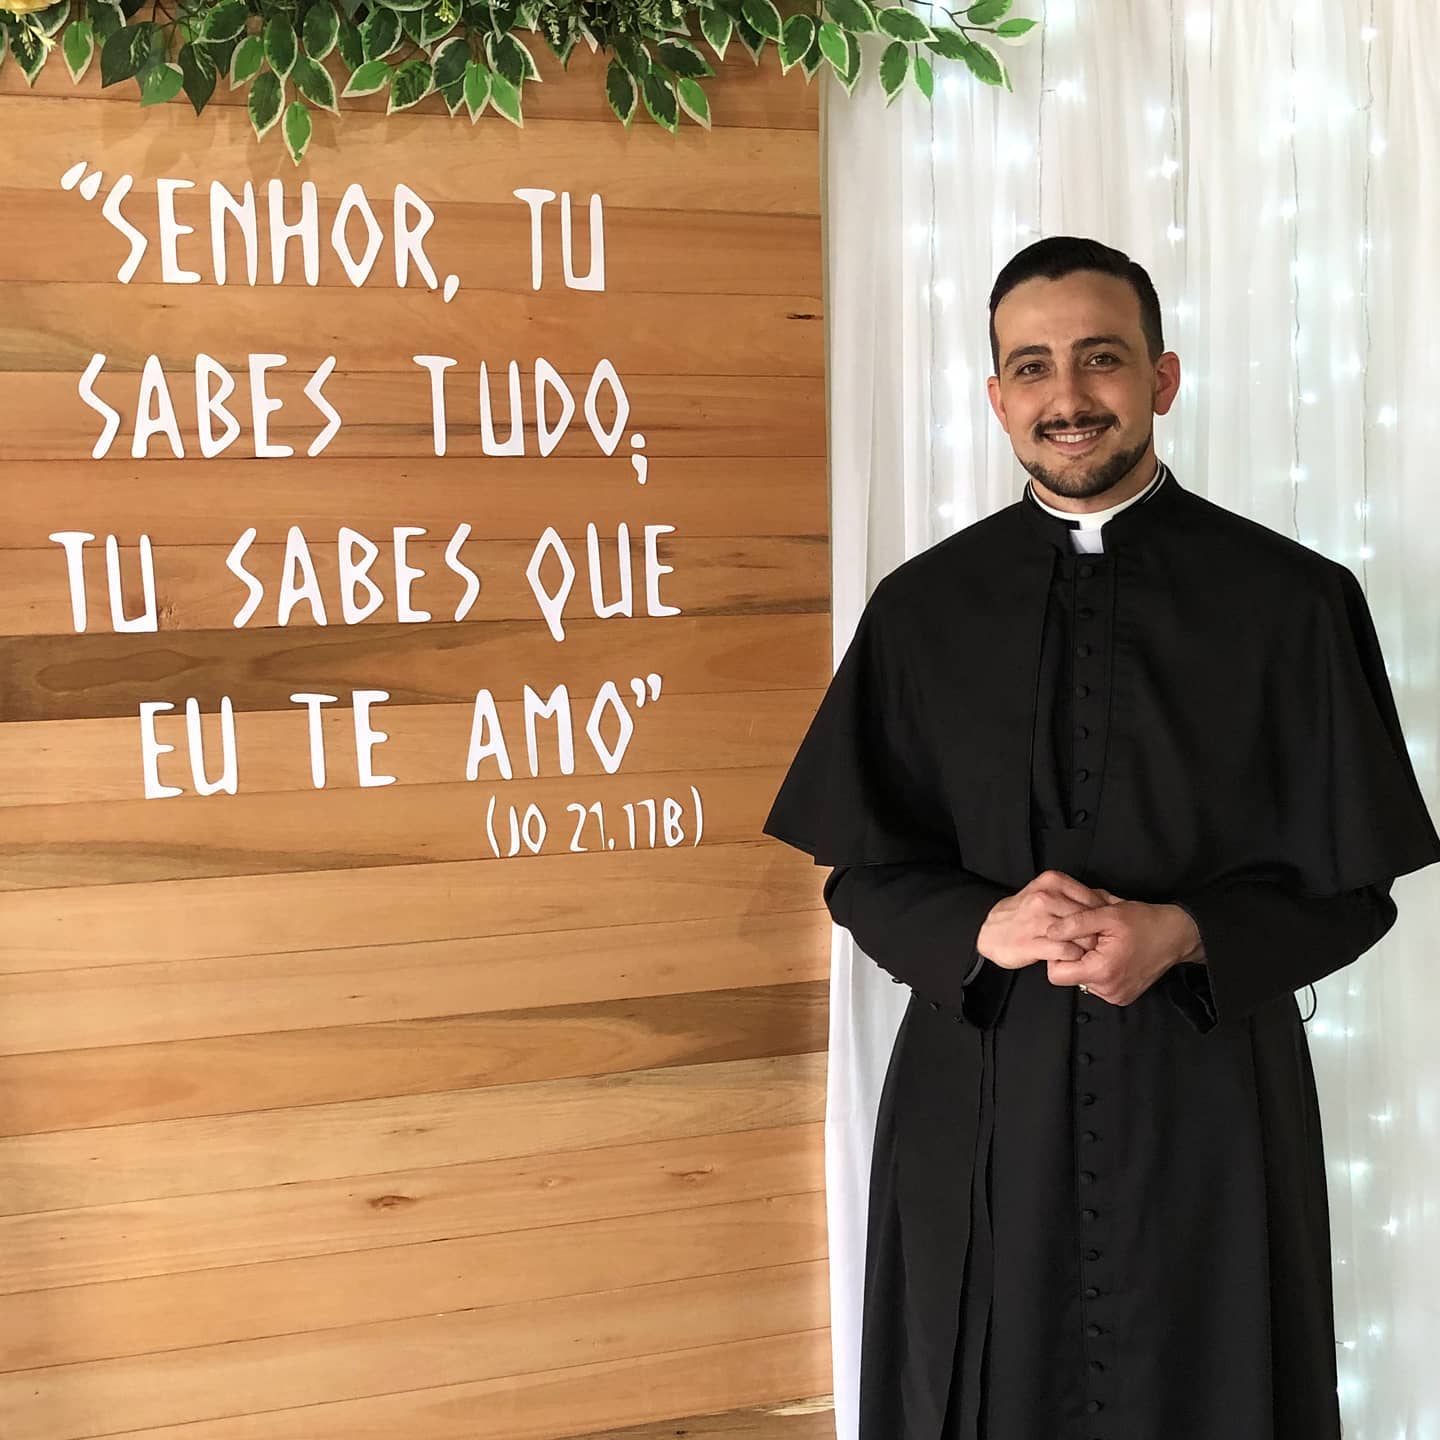 Sacerdote: o Bom Pastor como promessa de Deus a seu povo - Diocese de Uruaçu